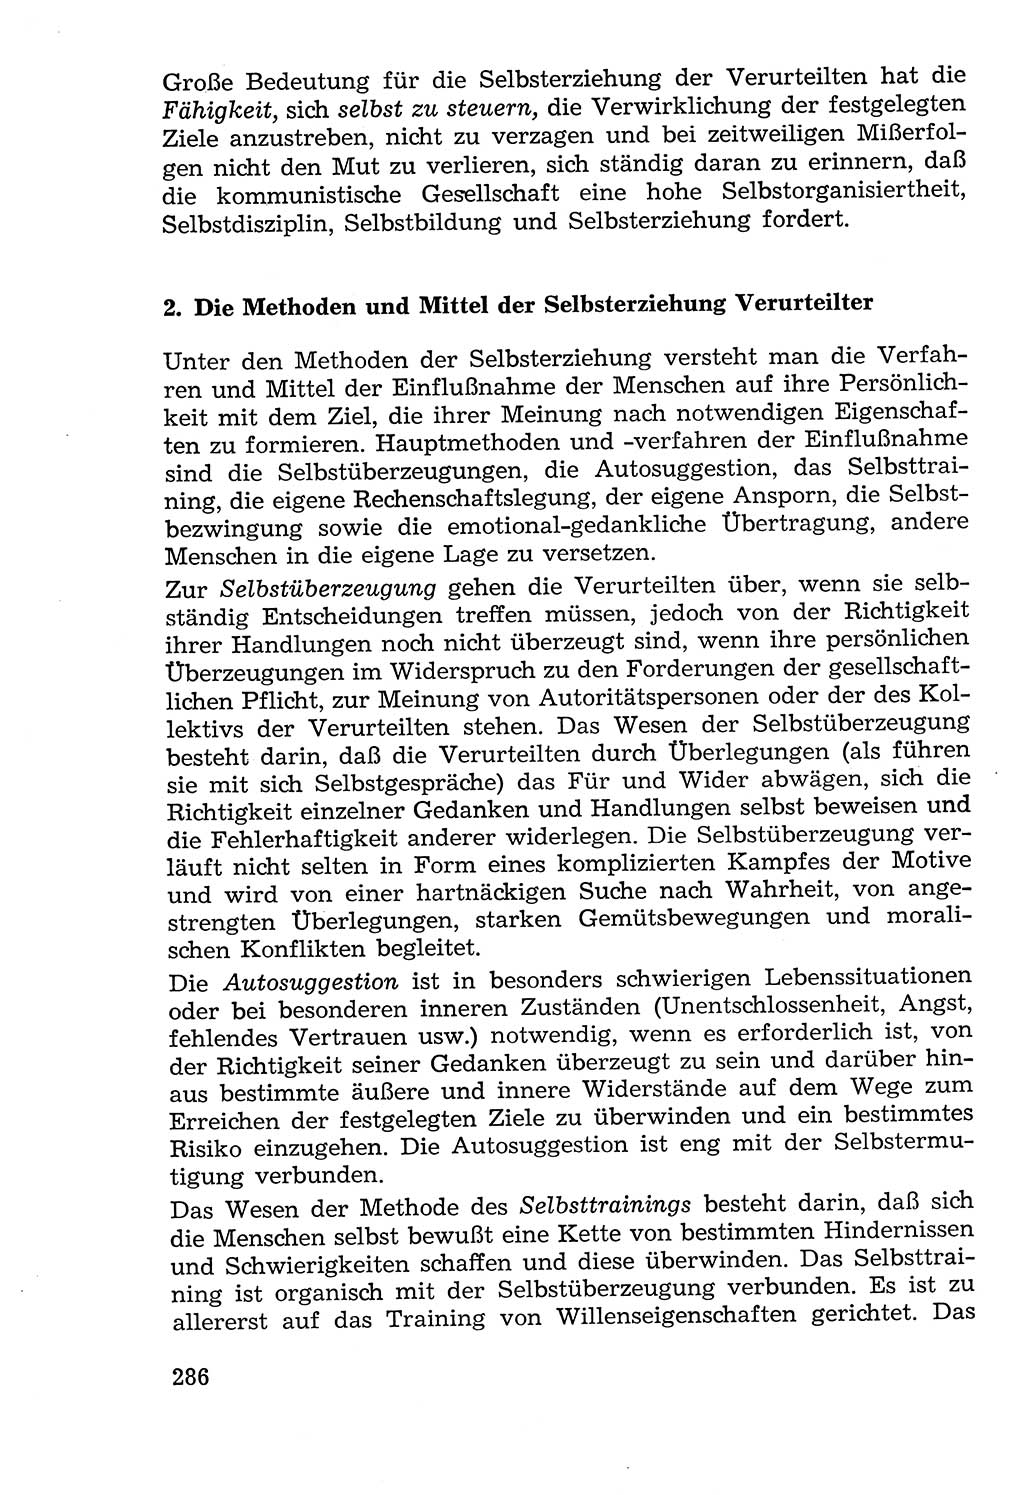 Lehrbuch der Strafvollzugspädagogik [Deutsche Demokratische Republik (DDR)] 1969, Seite 286 (Lb. SV-Pd. DDR 1969, S. 286)